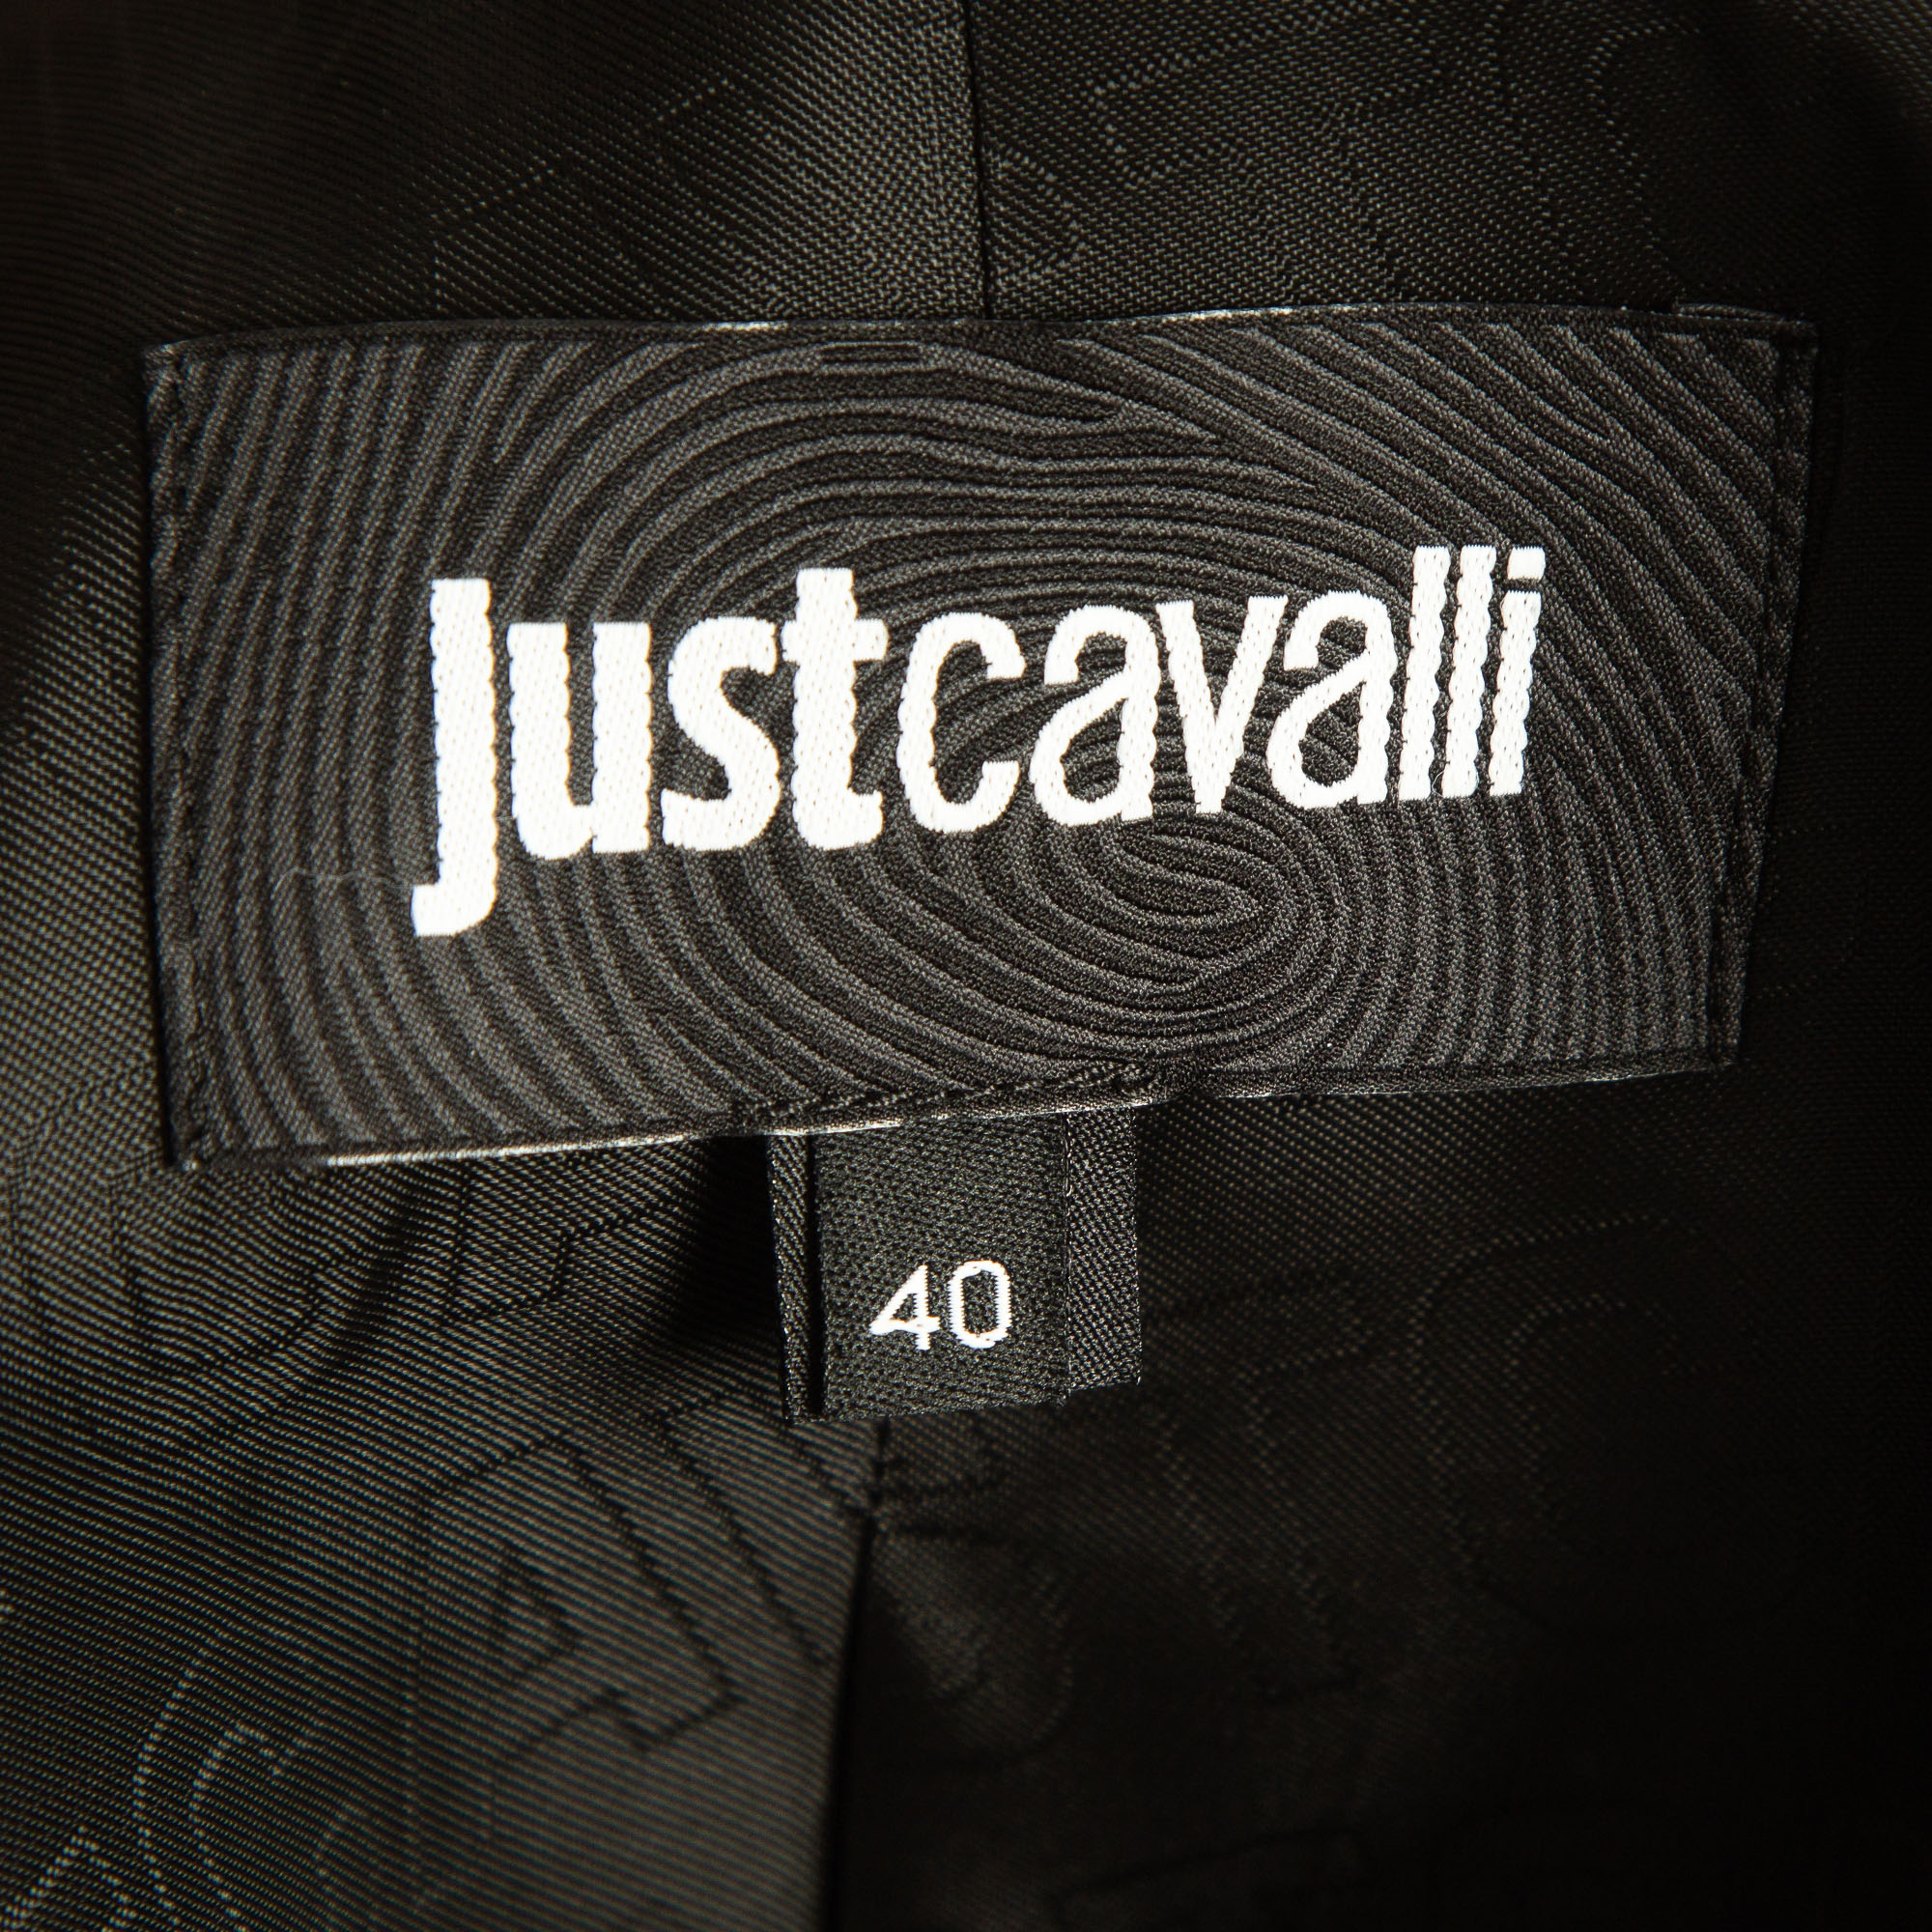 Just Cavalli Black Brocade Satin Trimmed Blazer S